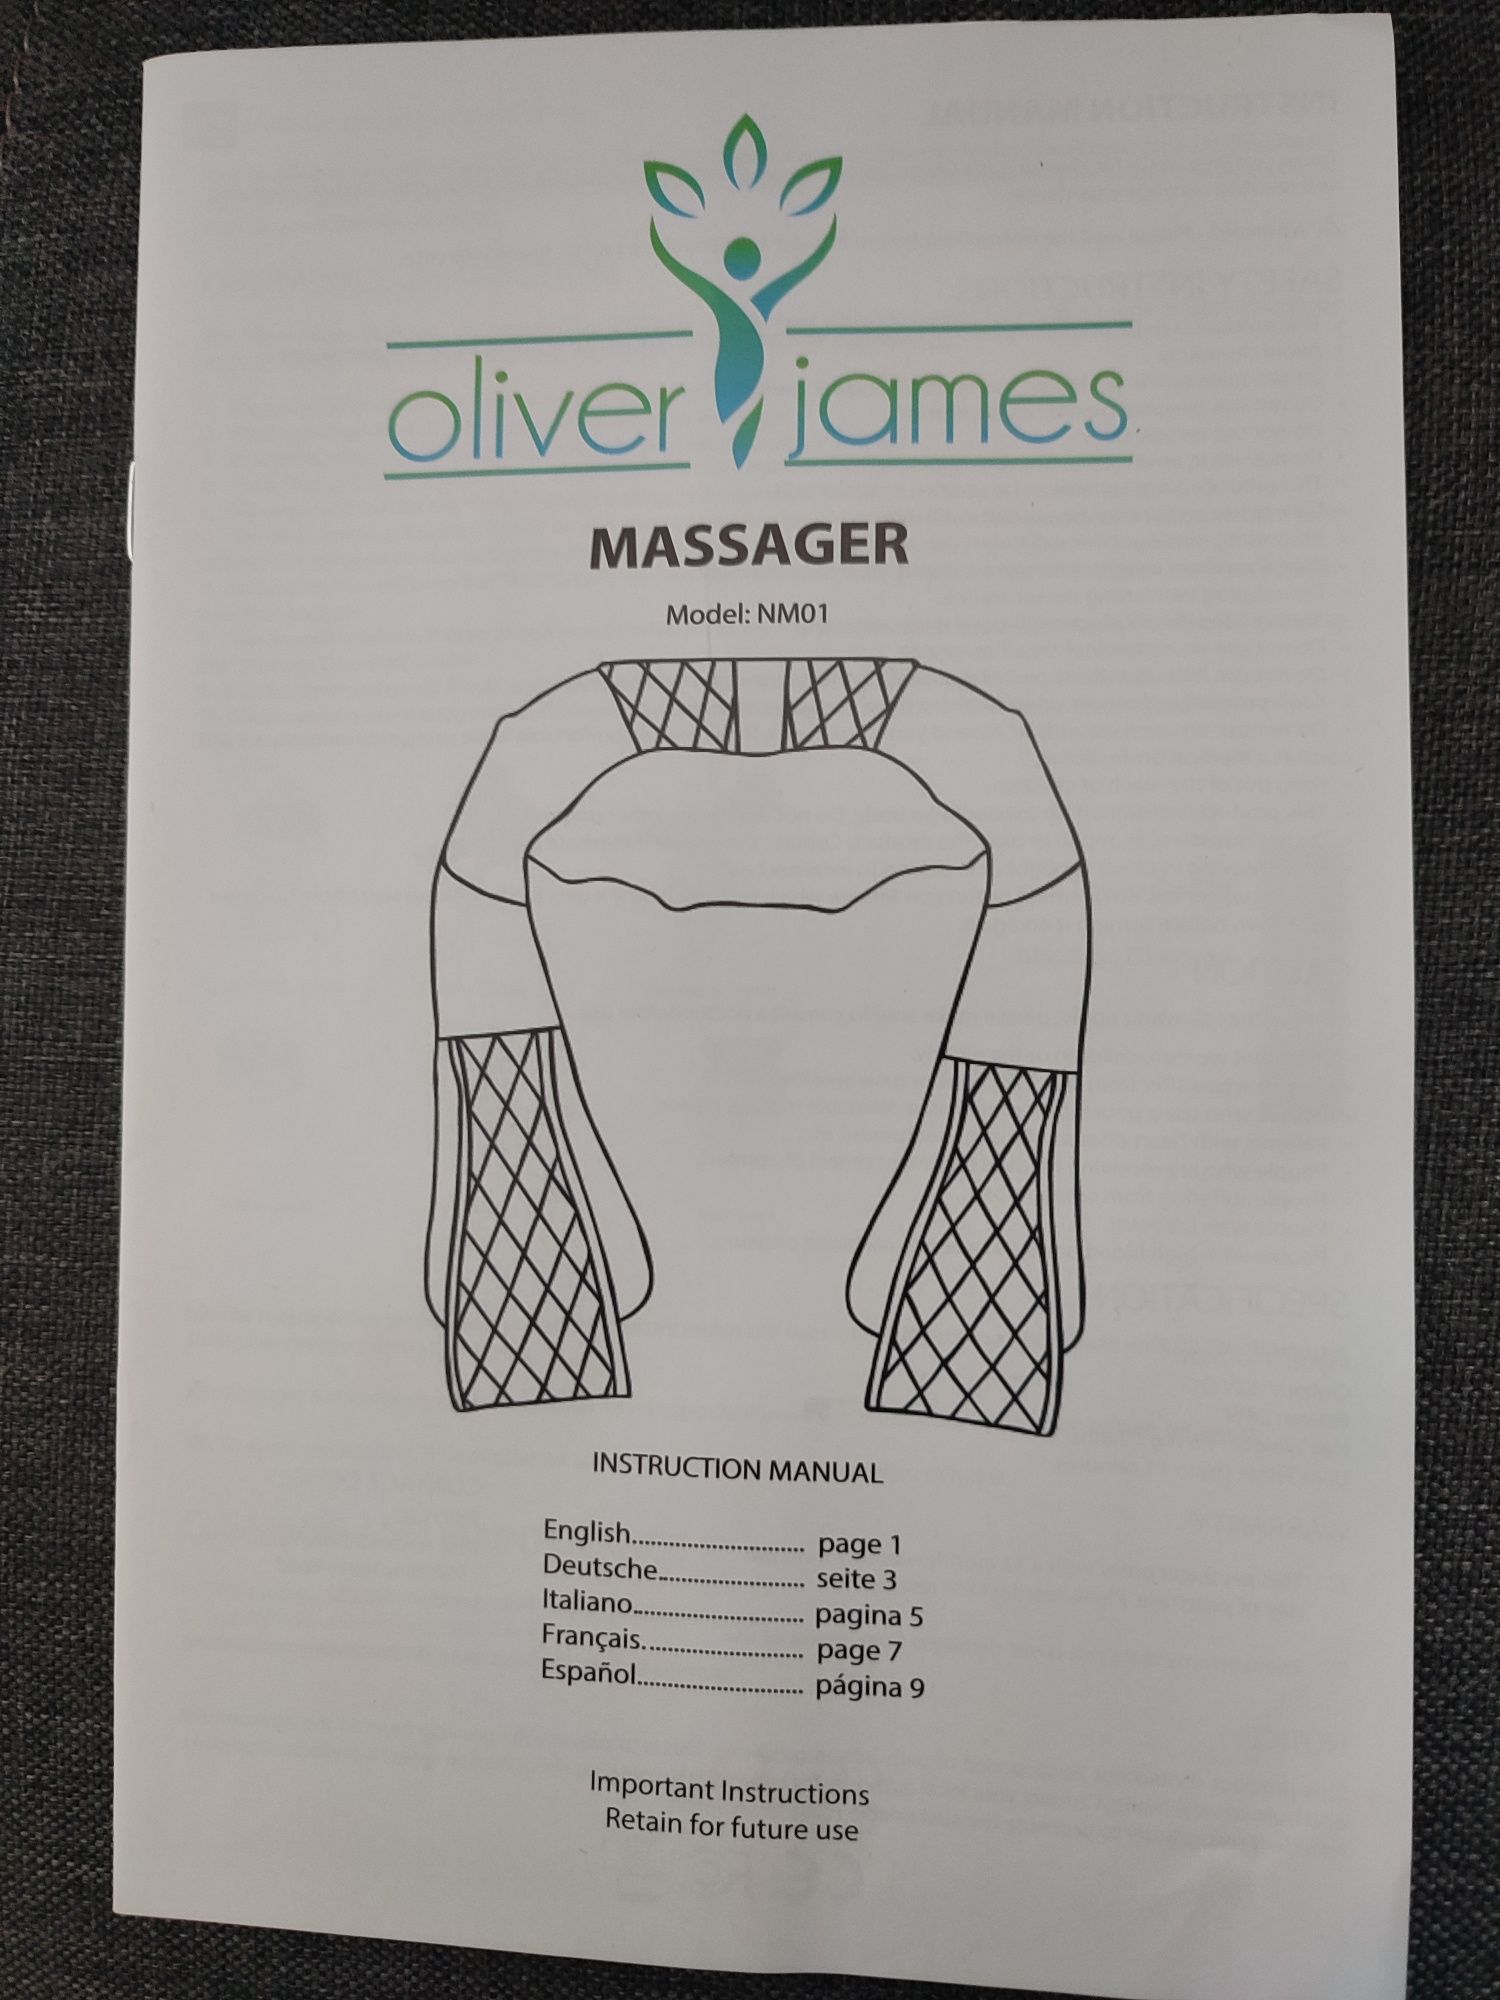 Masażer Oliver James model NM01